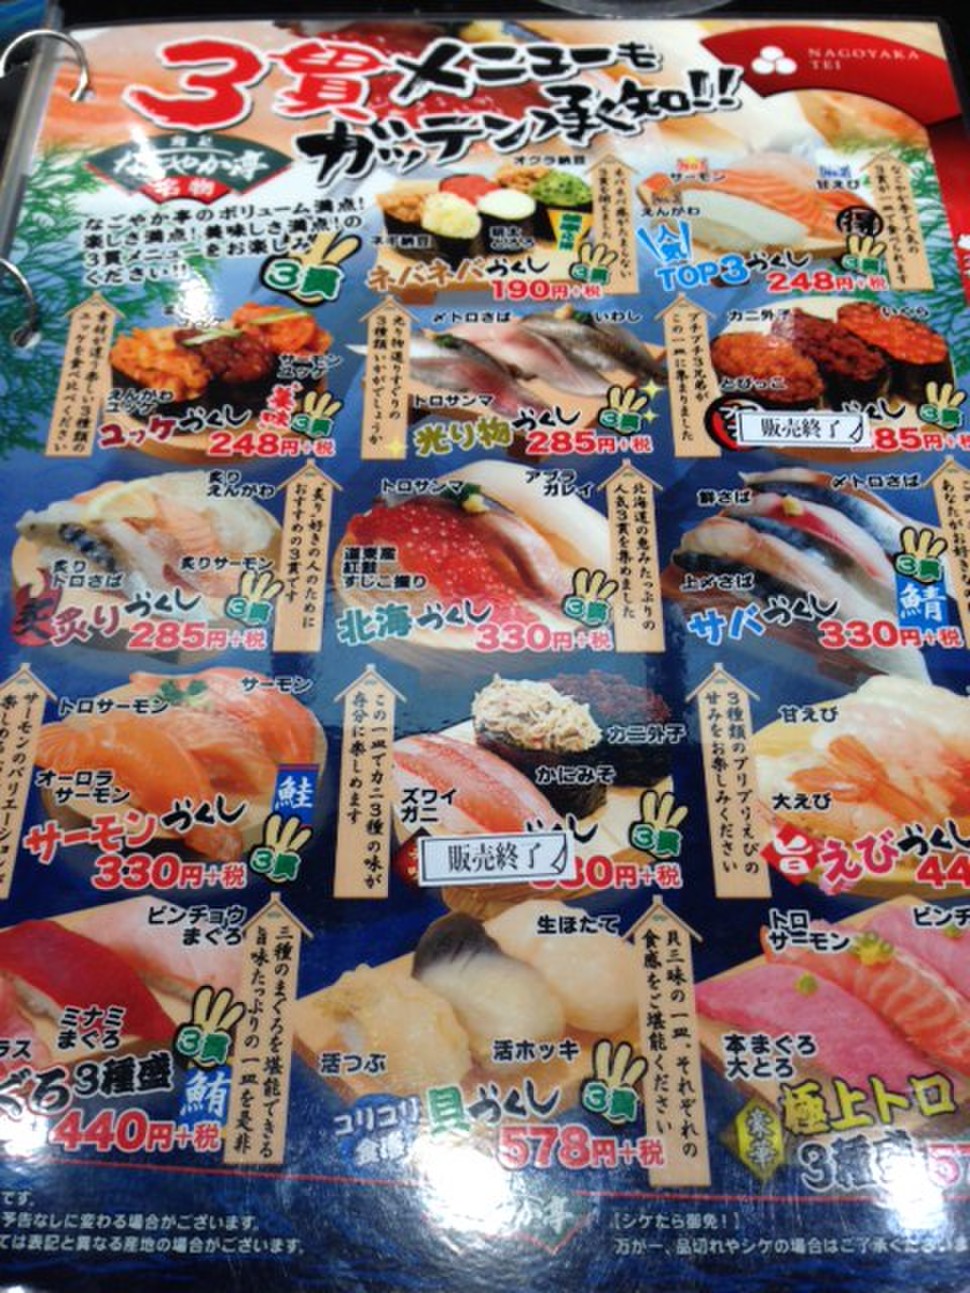 釧路 絶品の回転寿司を食べよう 道東産のおすすめネタをご紹介 なごやか亭 まつりや Playlife プレイライフ